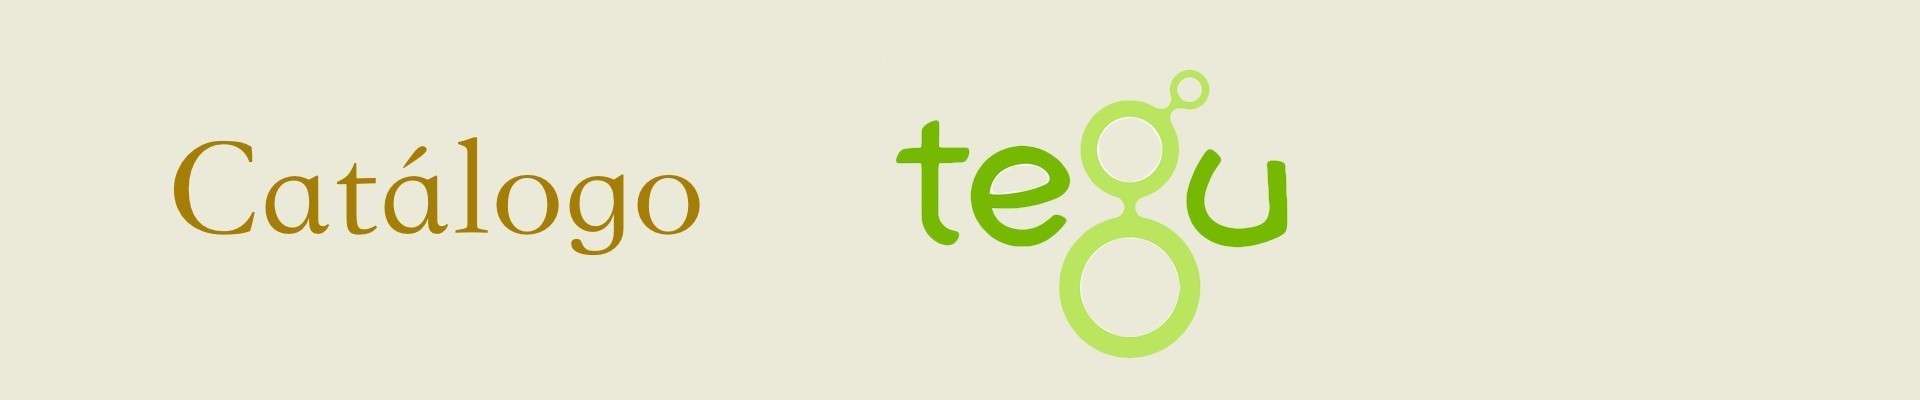 Comprar juguetes educativos para niños de la marca Tegu | Veobio